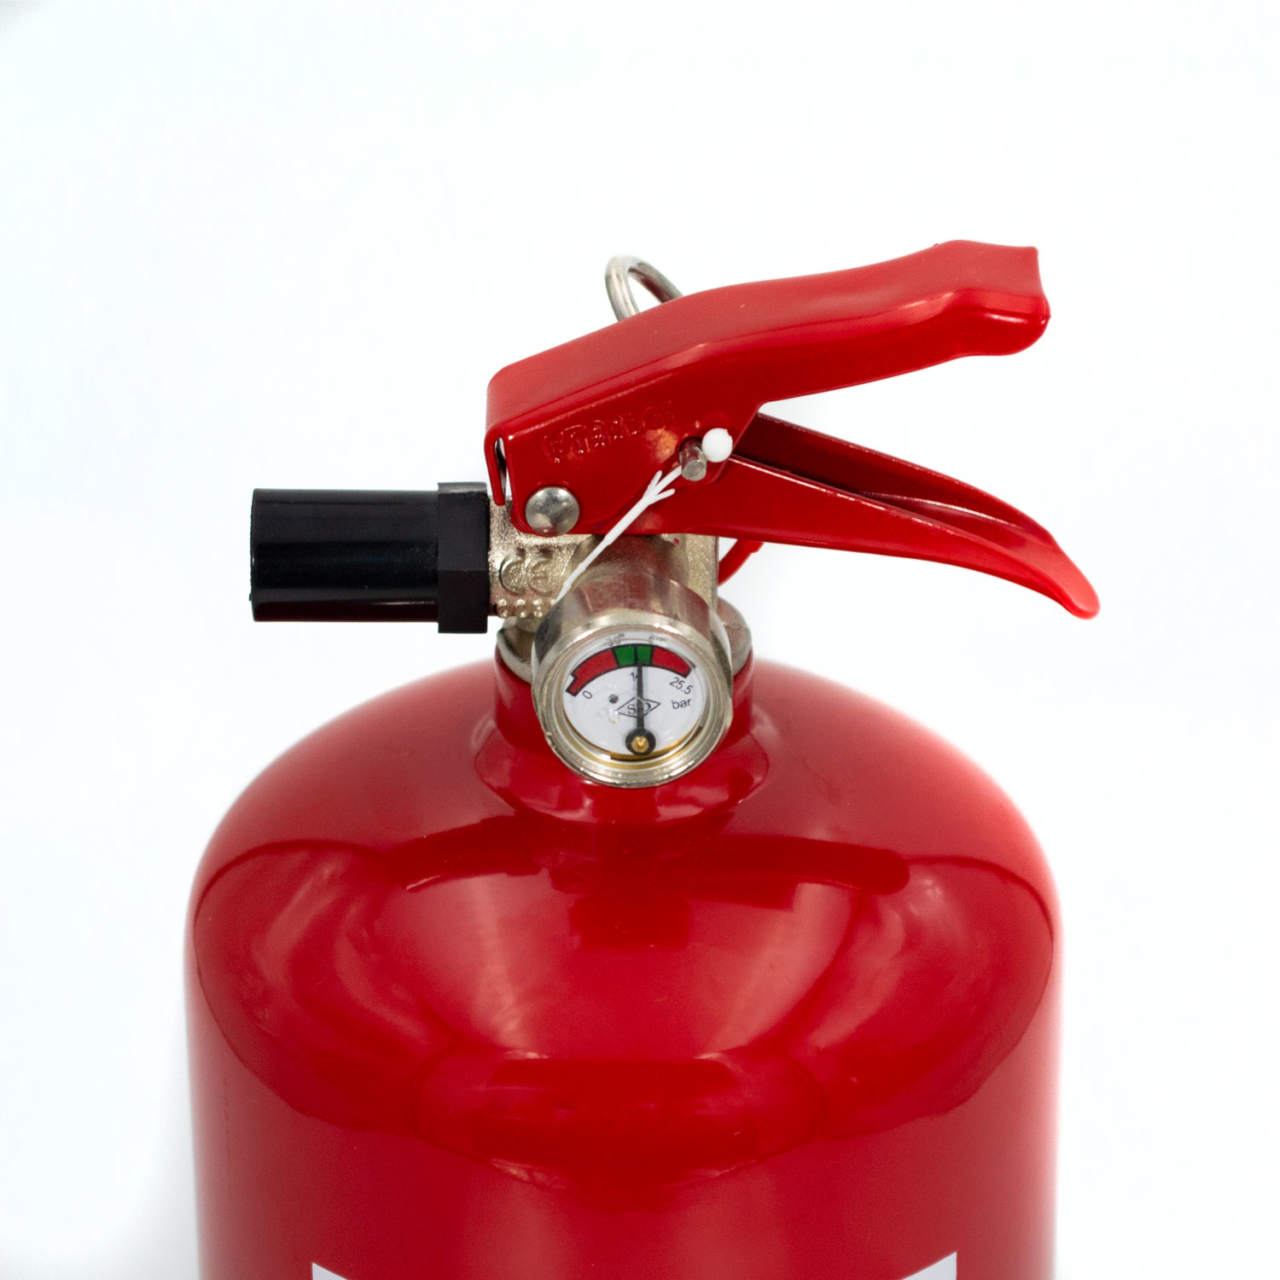 Feuerlöschspray - Handliche und effektive Brandbekämpfung